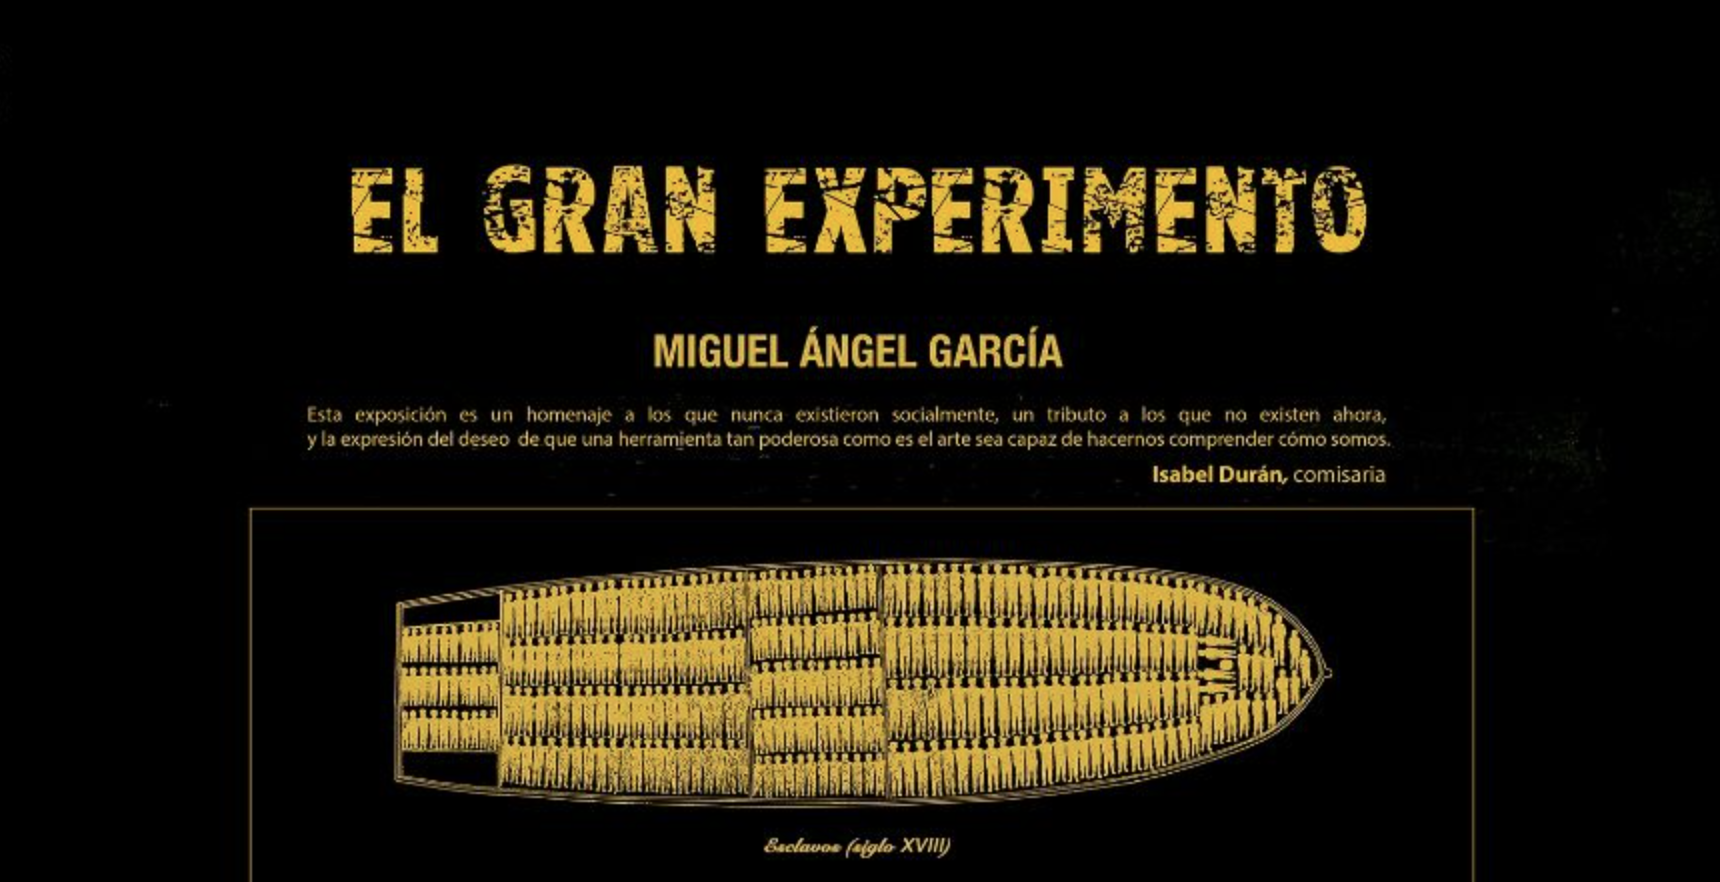 Se inauguró la exposición "El gran experimento" de Miguel Angel García | Museo Nacional de Antropología